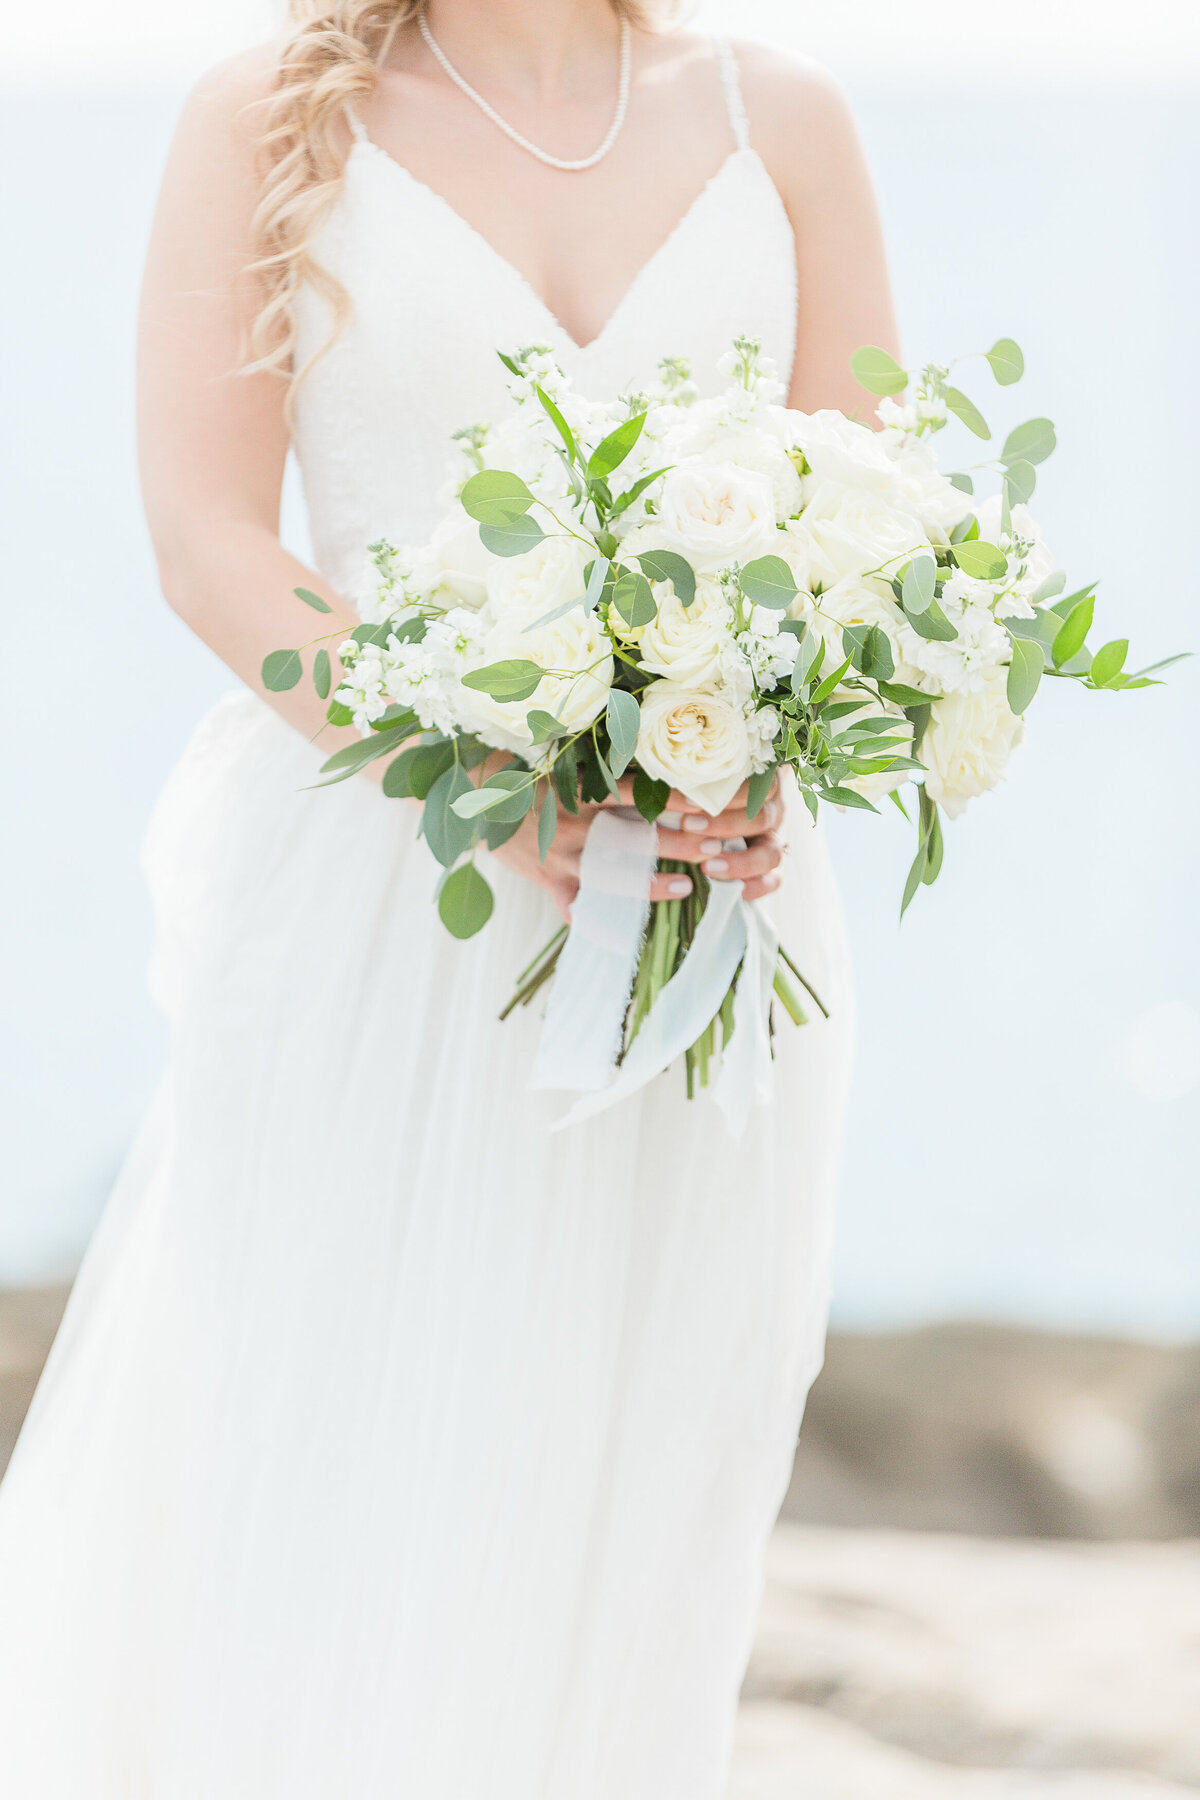 Detail image of bride's bouquet.